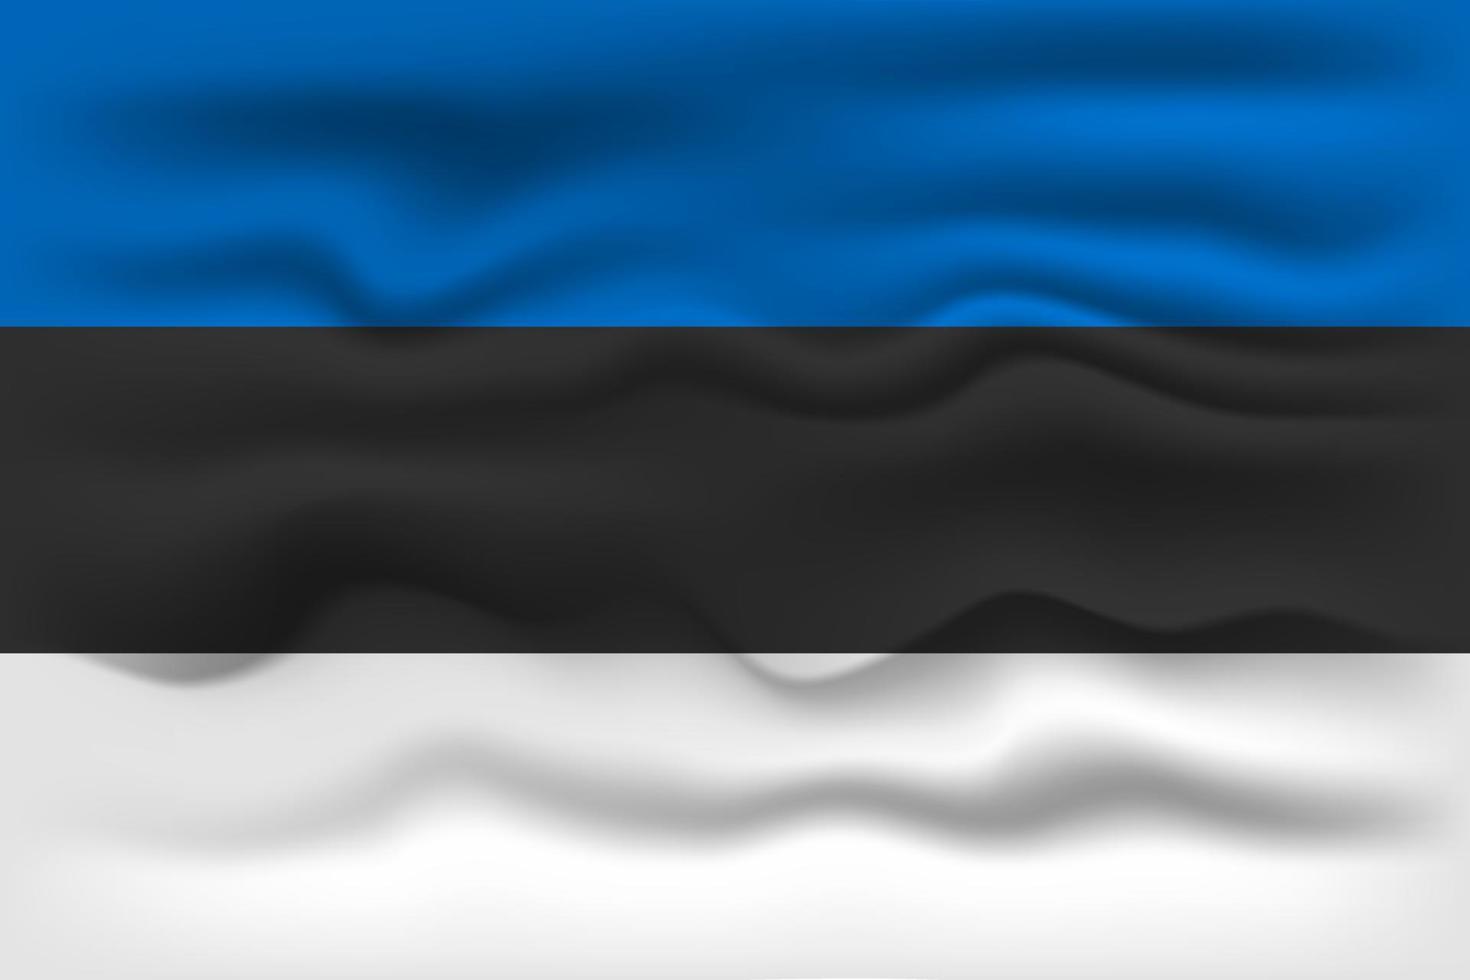 acenando a bandeira do país estônia. ilustração vetorial. vetor